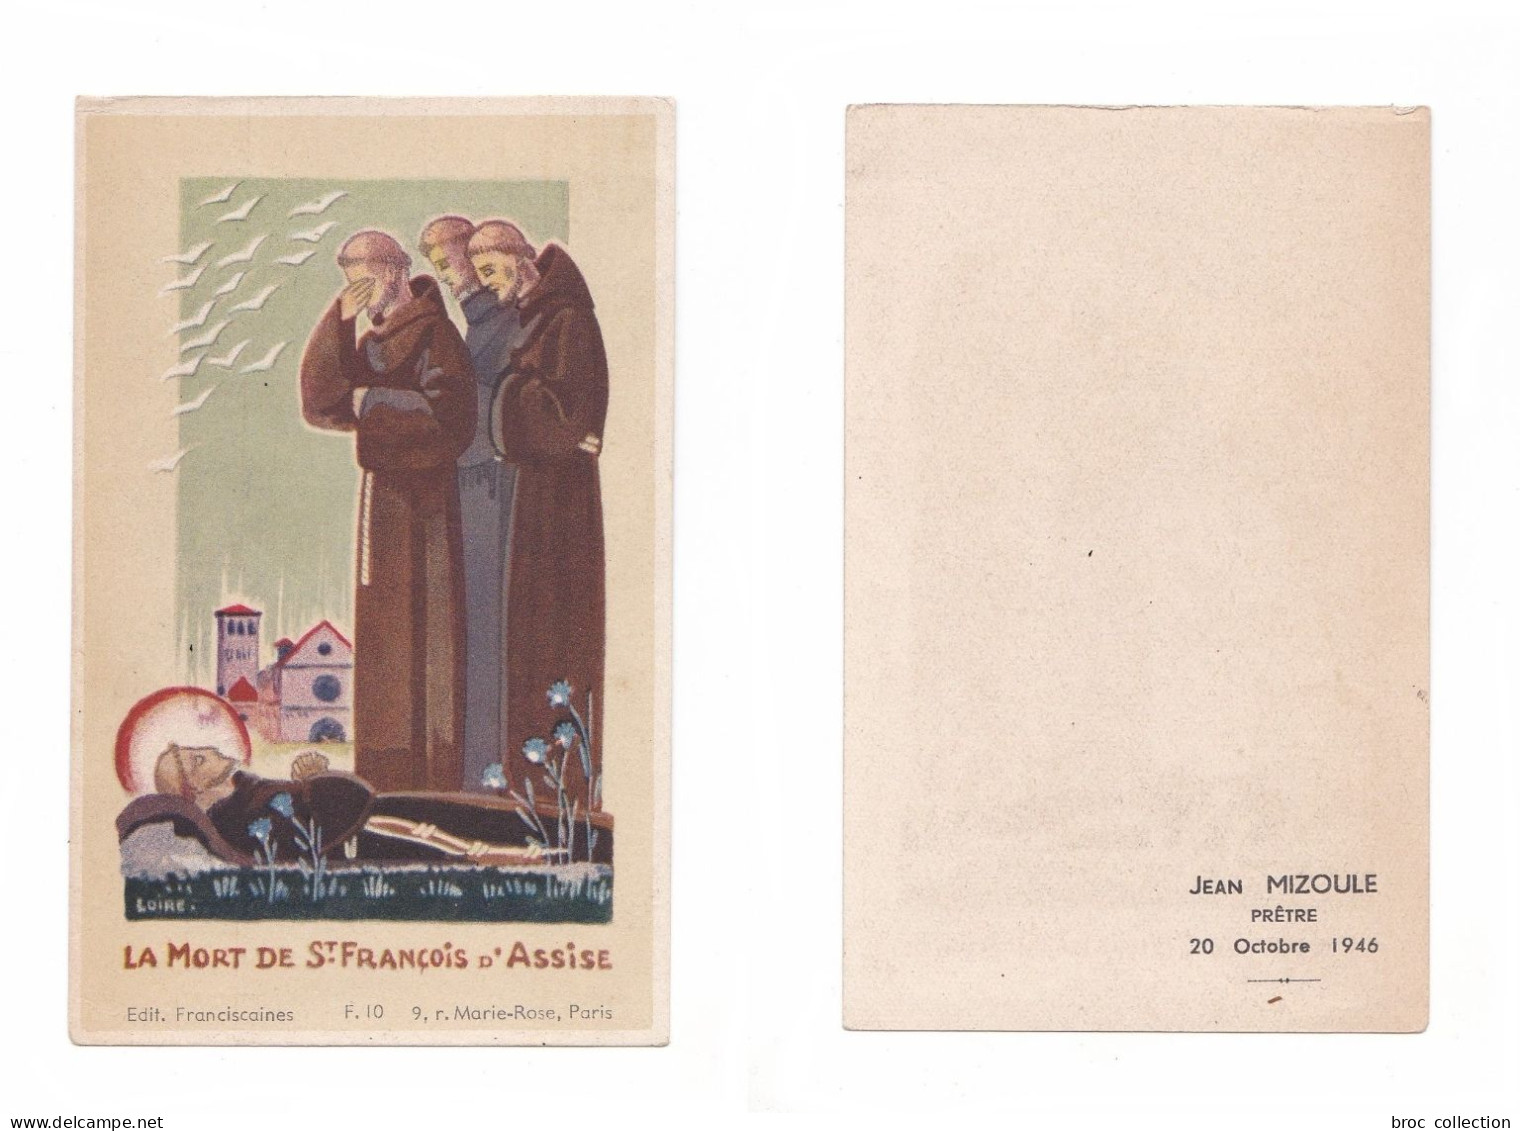 La Mort De Saint François D'Assise, Éditions Franciscaines F. 10, 1946, Jean Mizoule, Prêtre - Devotion Images